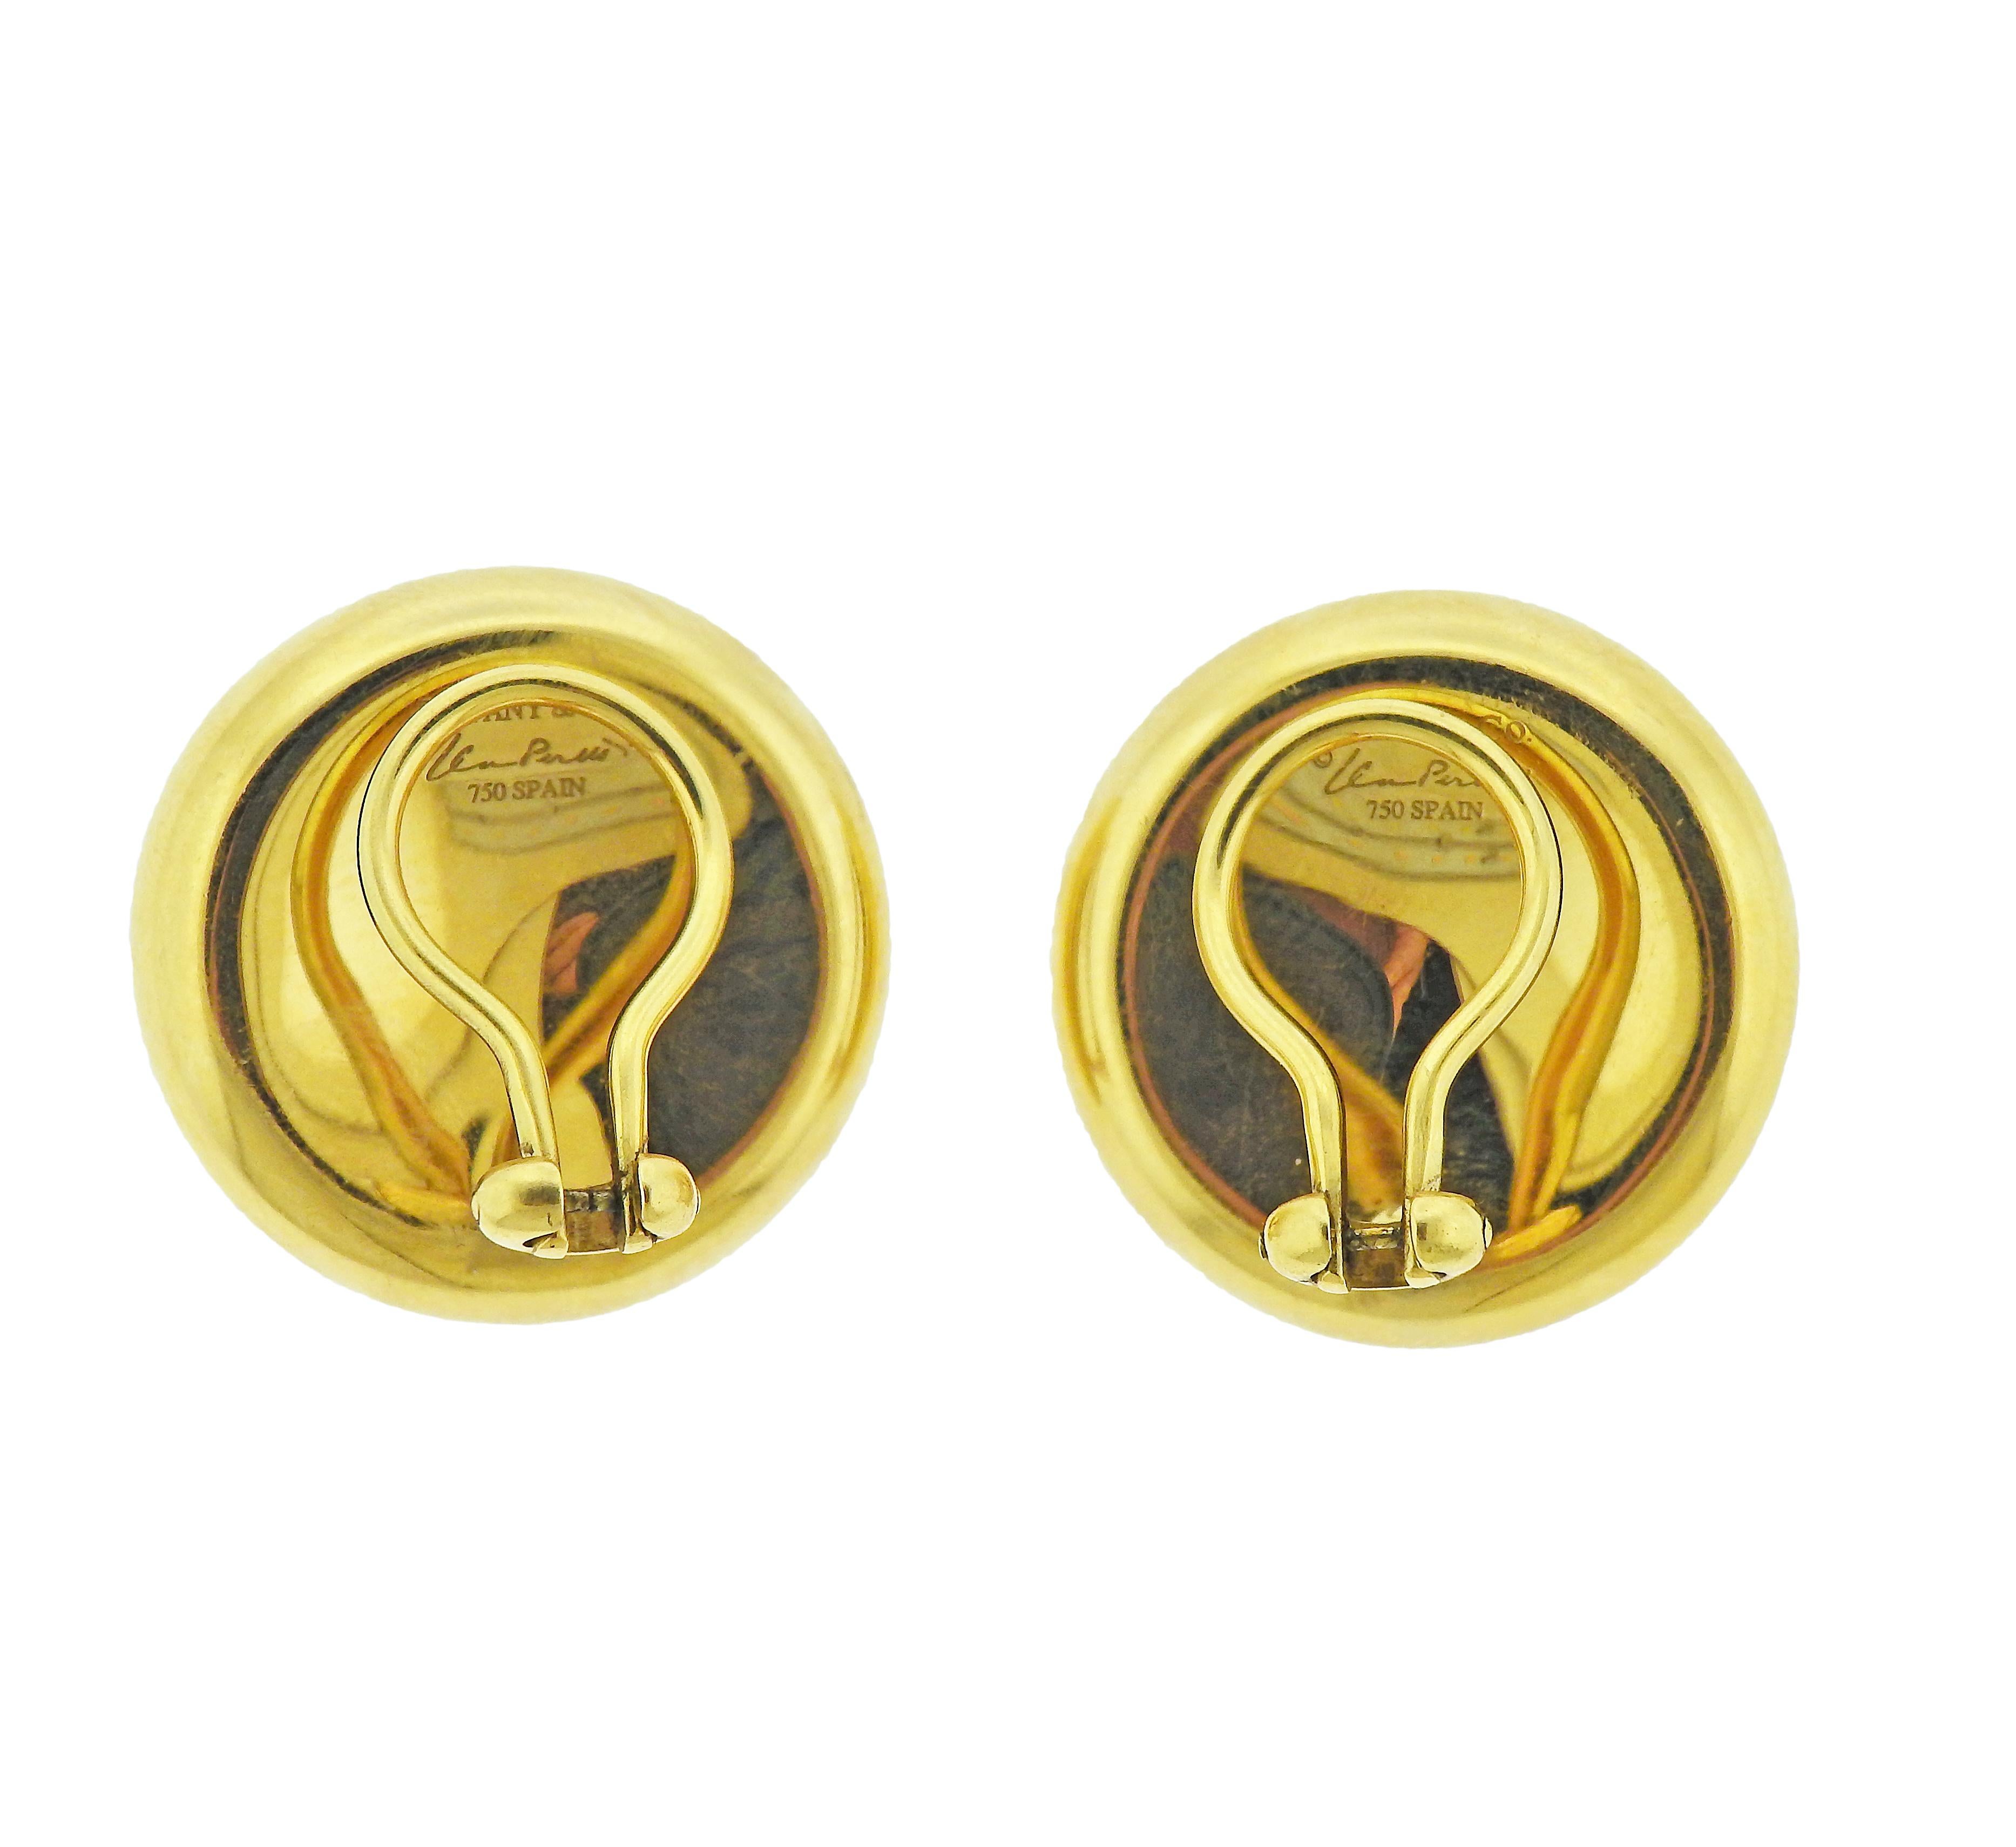 Ein Paar Ohrringe aus 18 Karat Gold mit eingekerbtem Design, von Elsa Peretti für Tiffany & Co. Die Ohrringe haben einen Durchmesser von 23 mm. Gezeichnet: Tiffany & Co, Elsa Peretti, Spanien, 750. Gewicht: 17 Gramm.